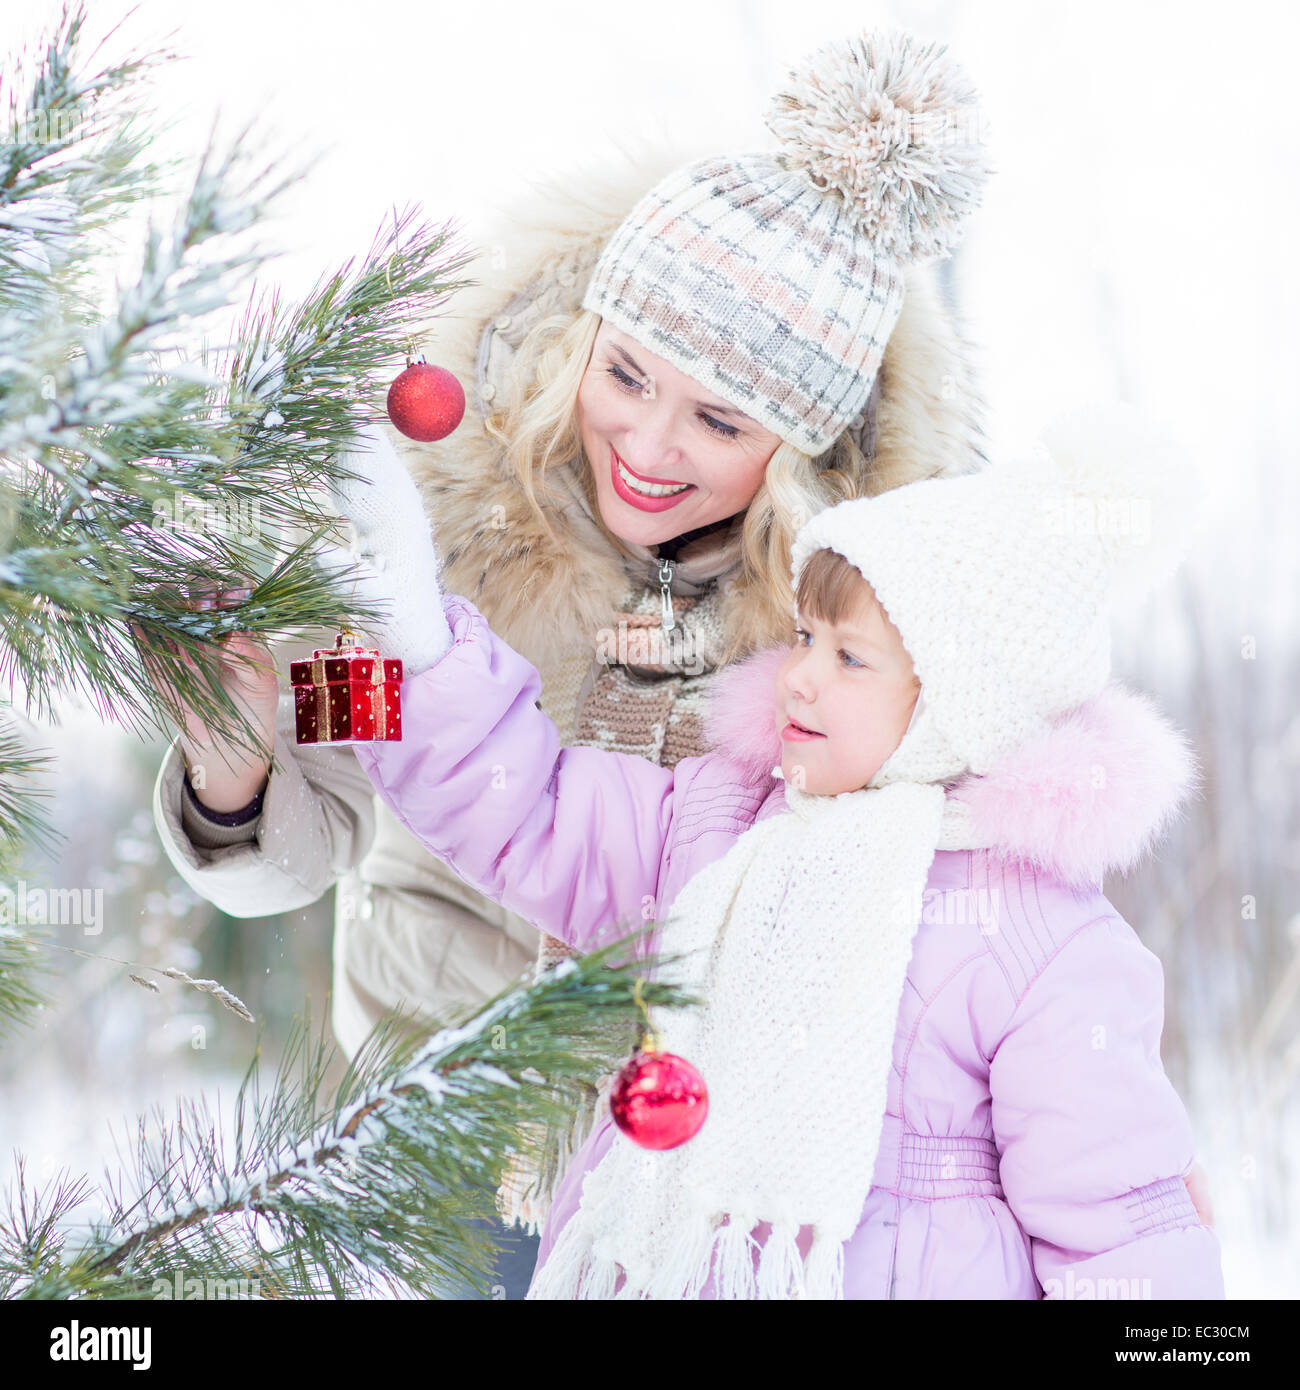 La madre y el niño Feliz Navidad Decora el árbol de invierno al aire libre Foto de stock